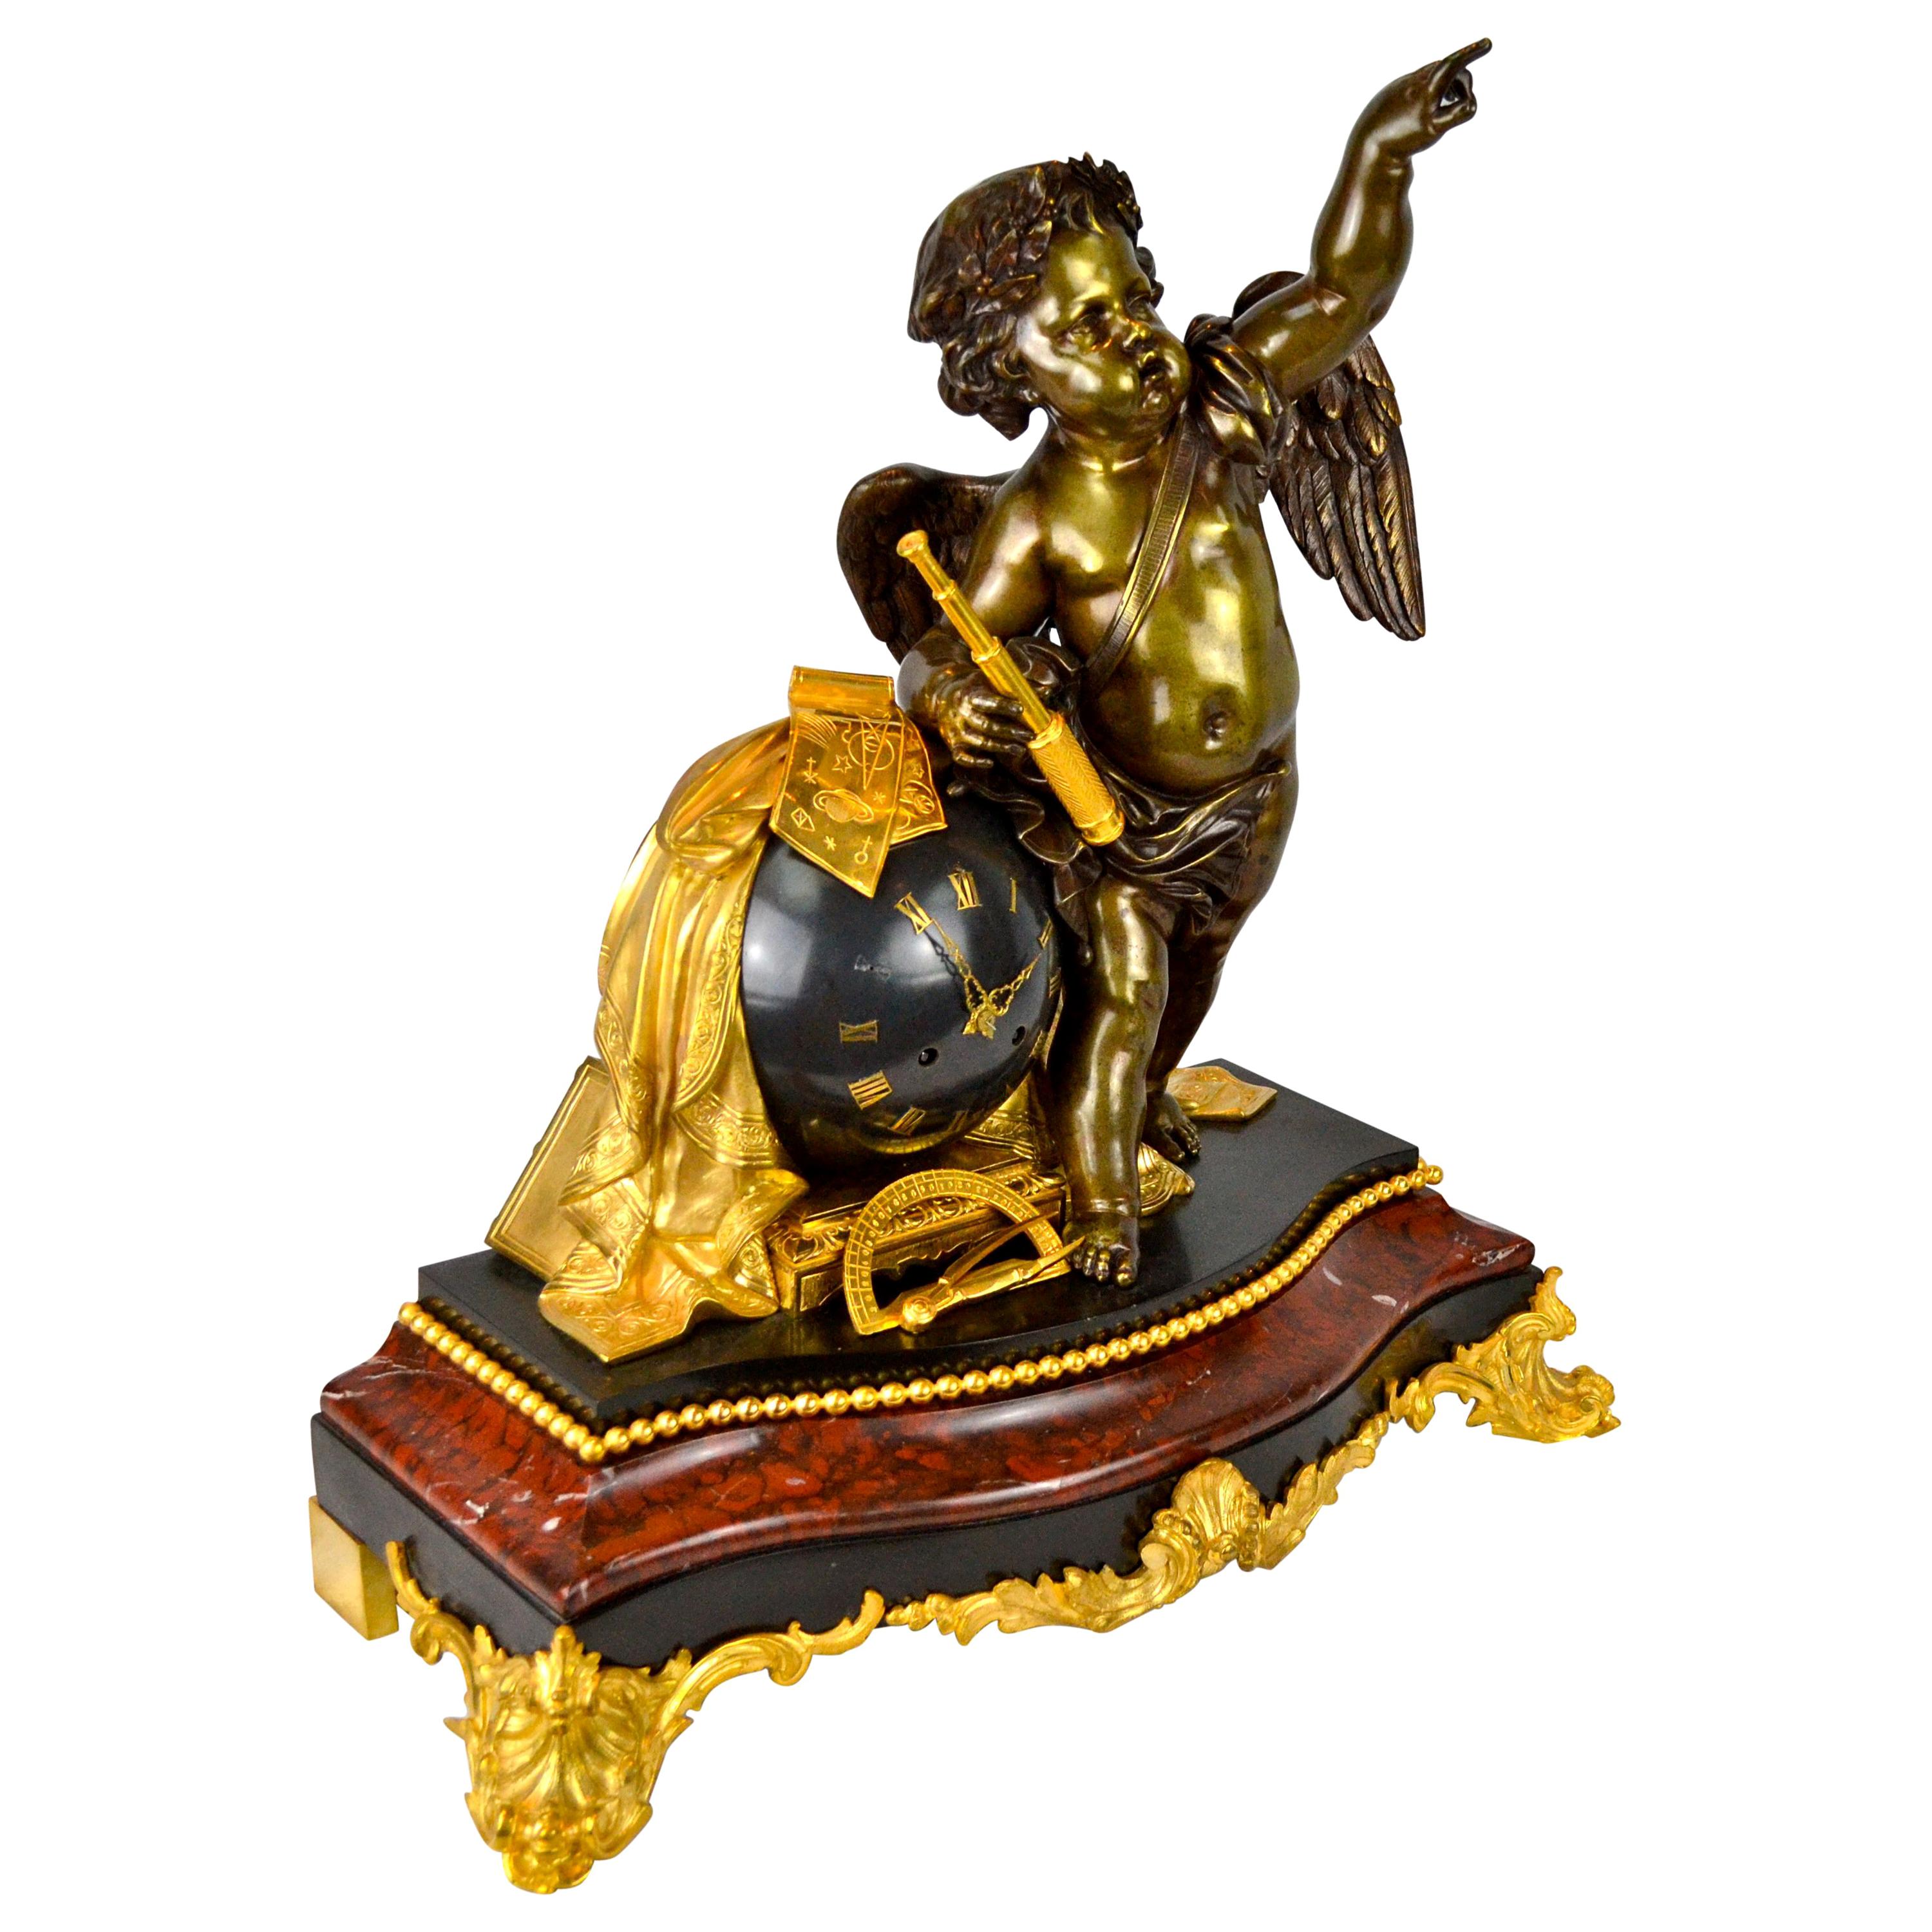 Horloge astronomique figurative des sciences Napoléon III. Le putto ailé en bronze patiné se tient à côté du globe terrestre en bronze 